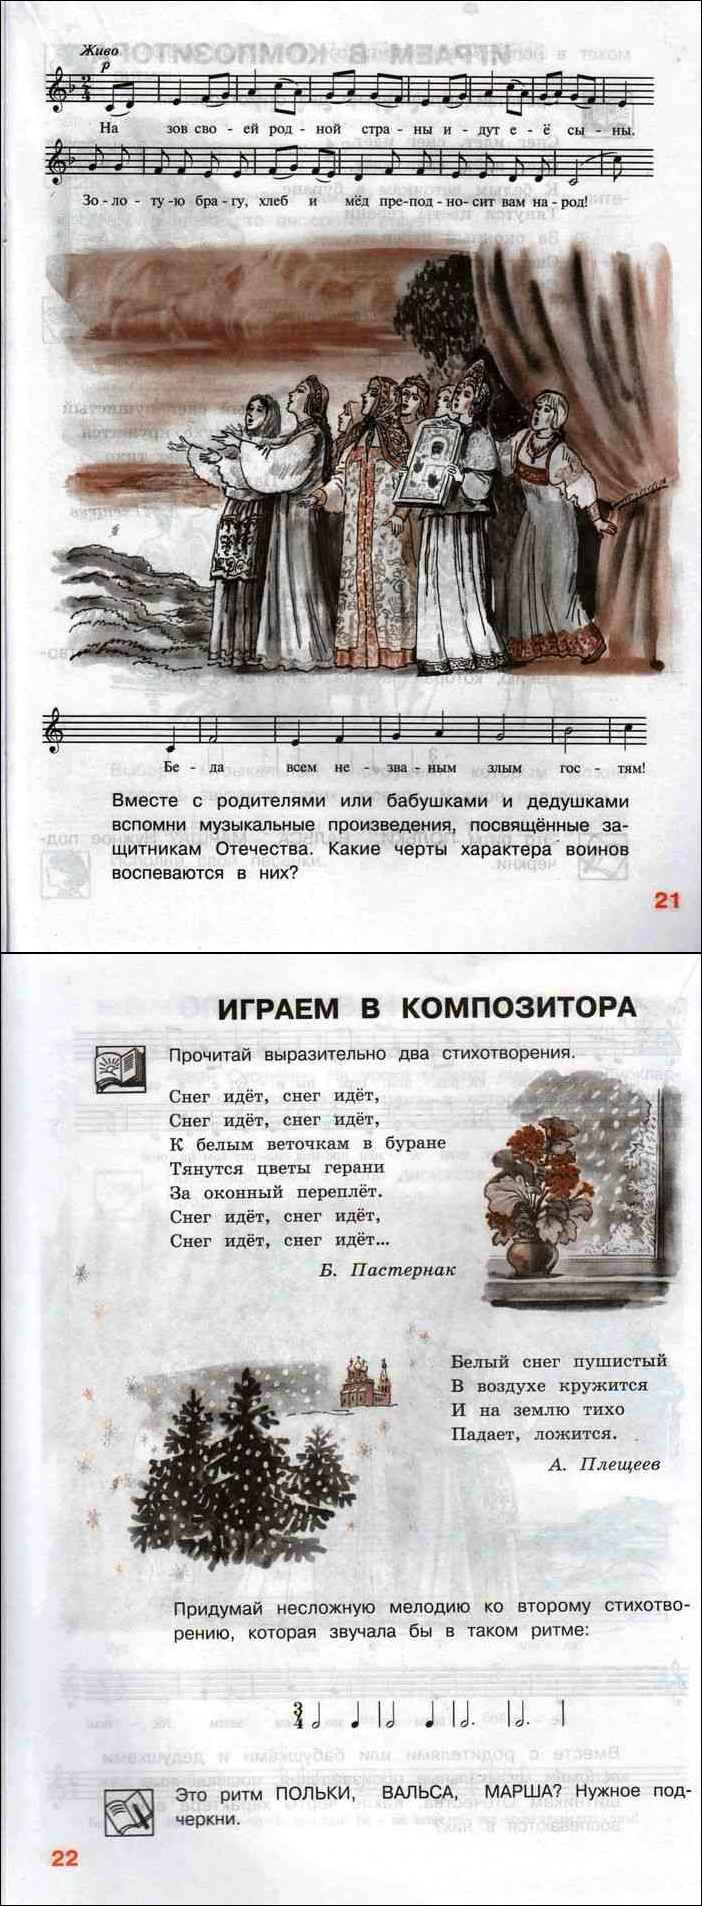 Критская сергеева шмагина музыка 3